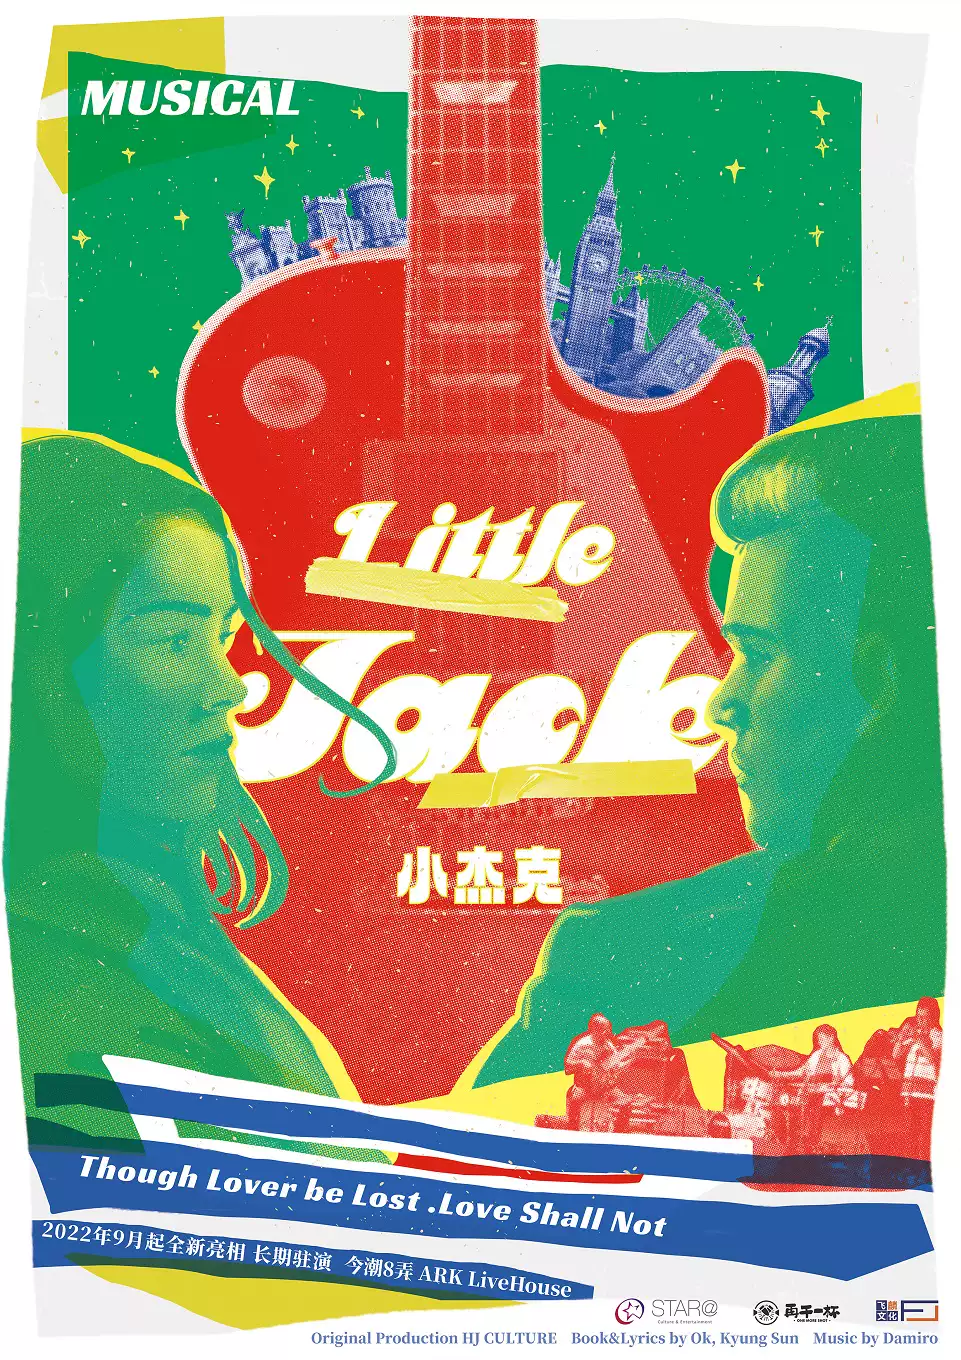 【上海】环境式音乐剧《Little Jack小杰克》